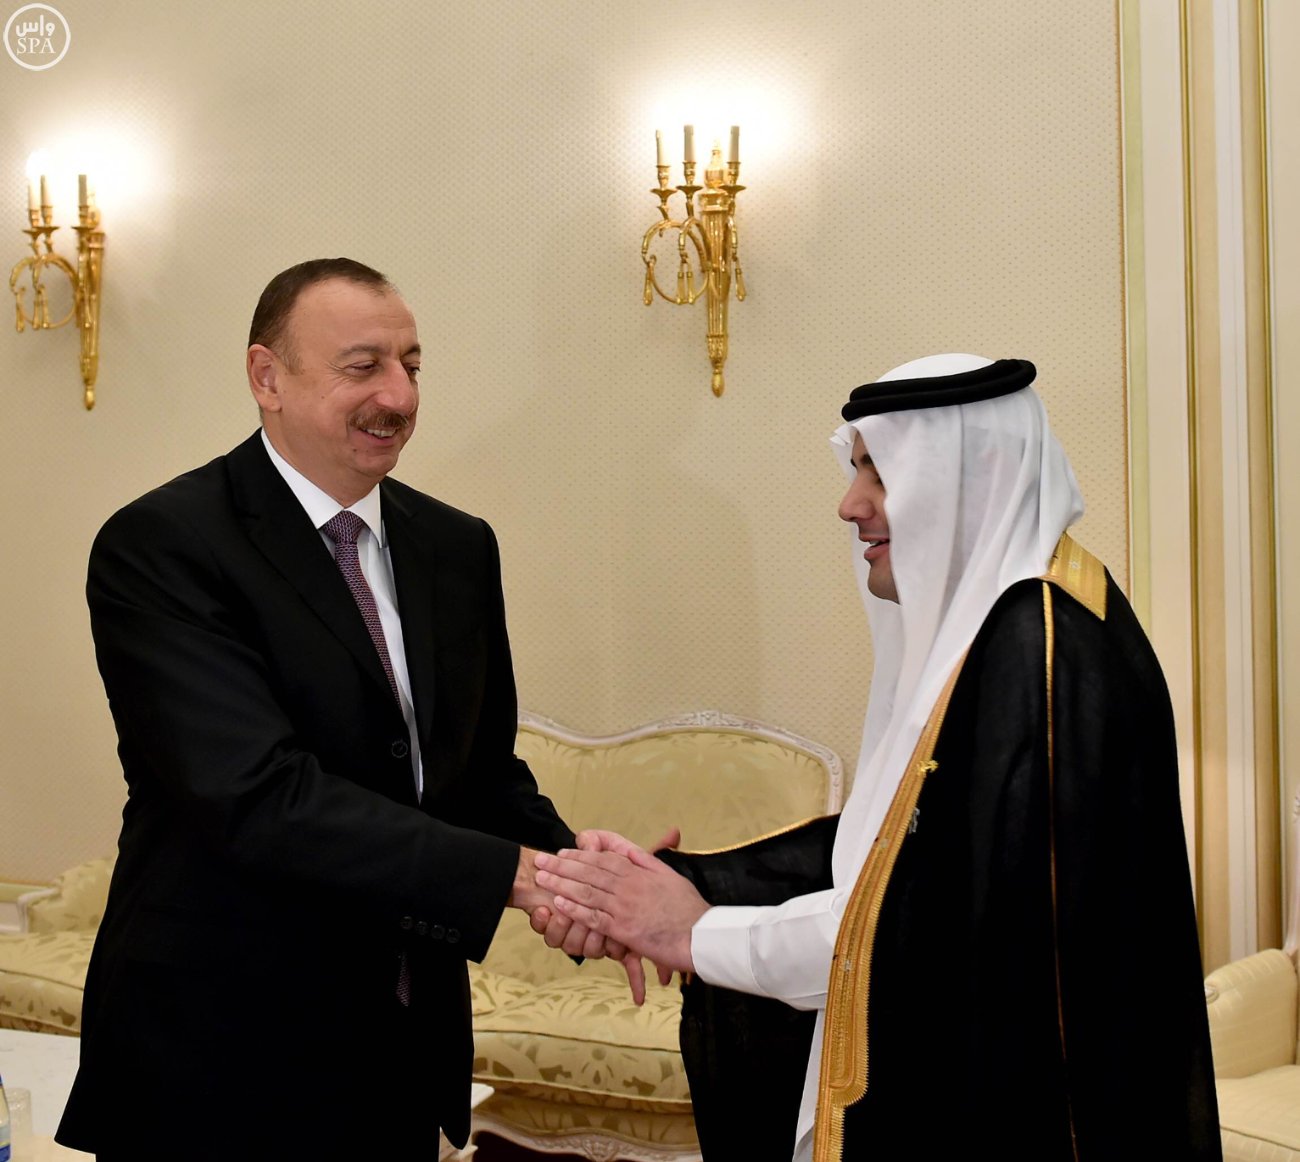 رئيس أذربيجان يستقبل وزير الثقافة والإعلام